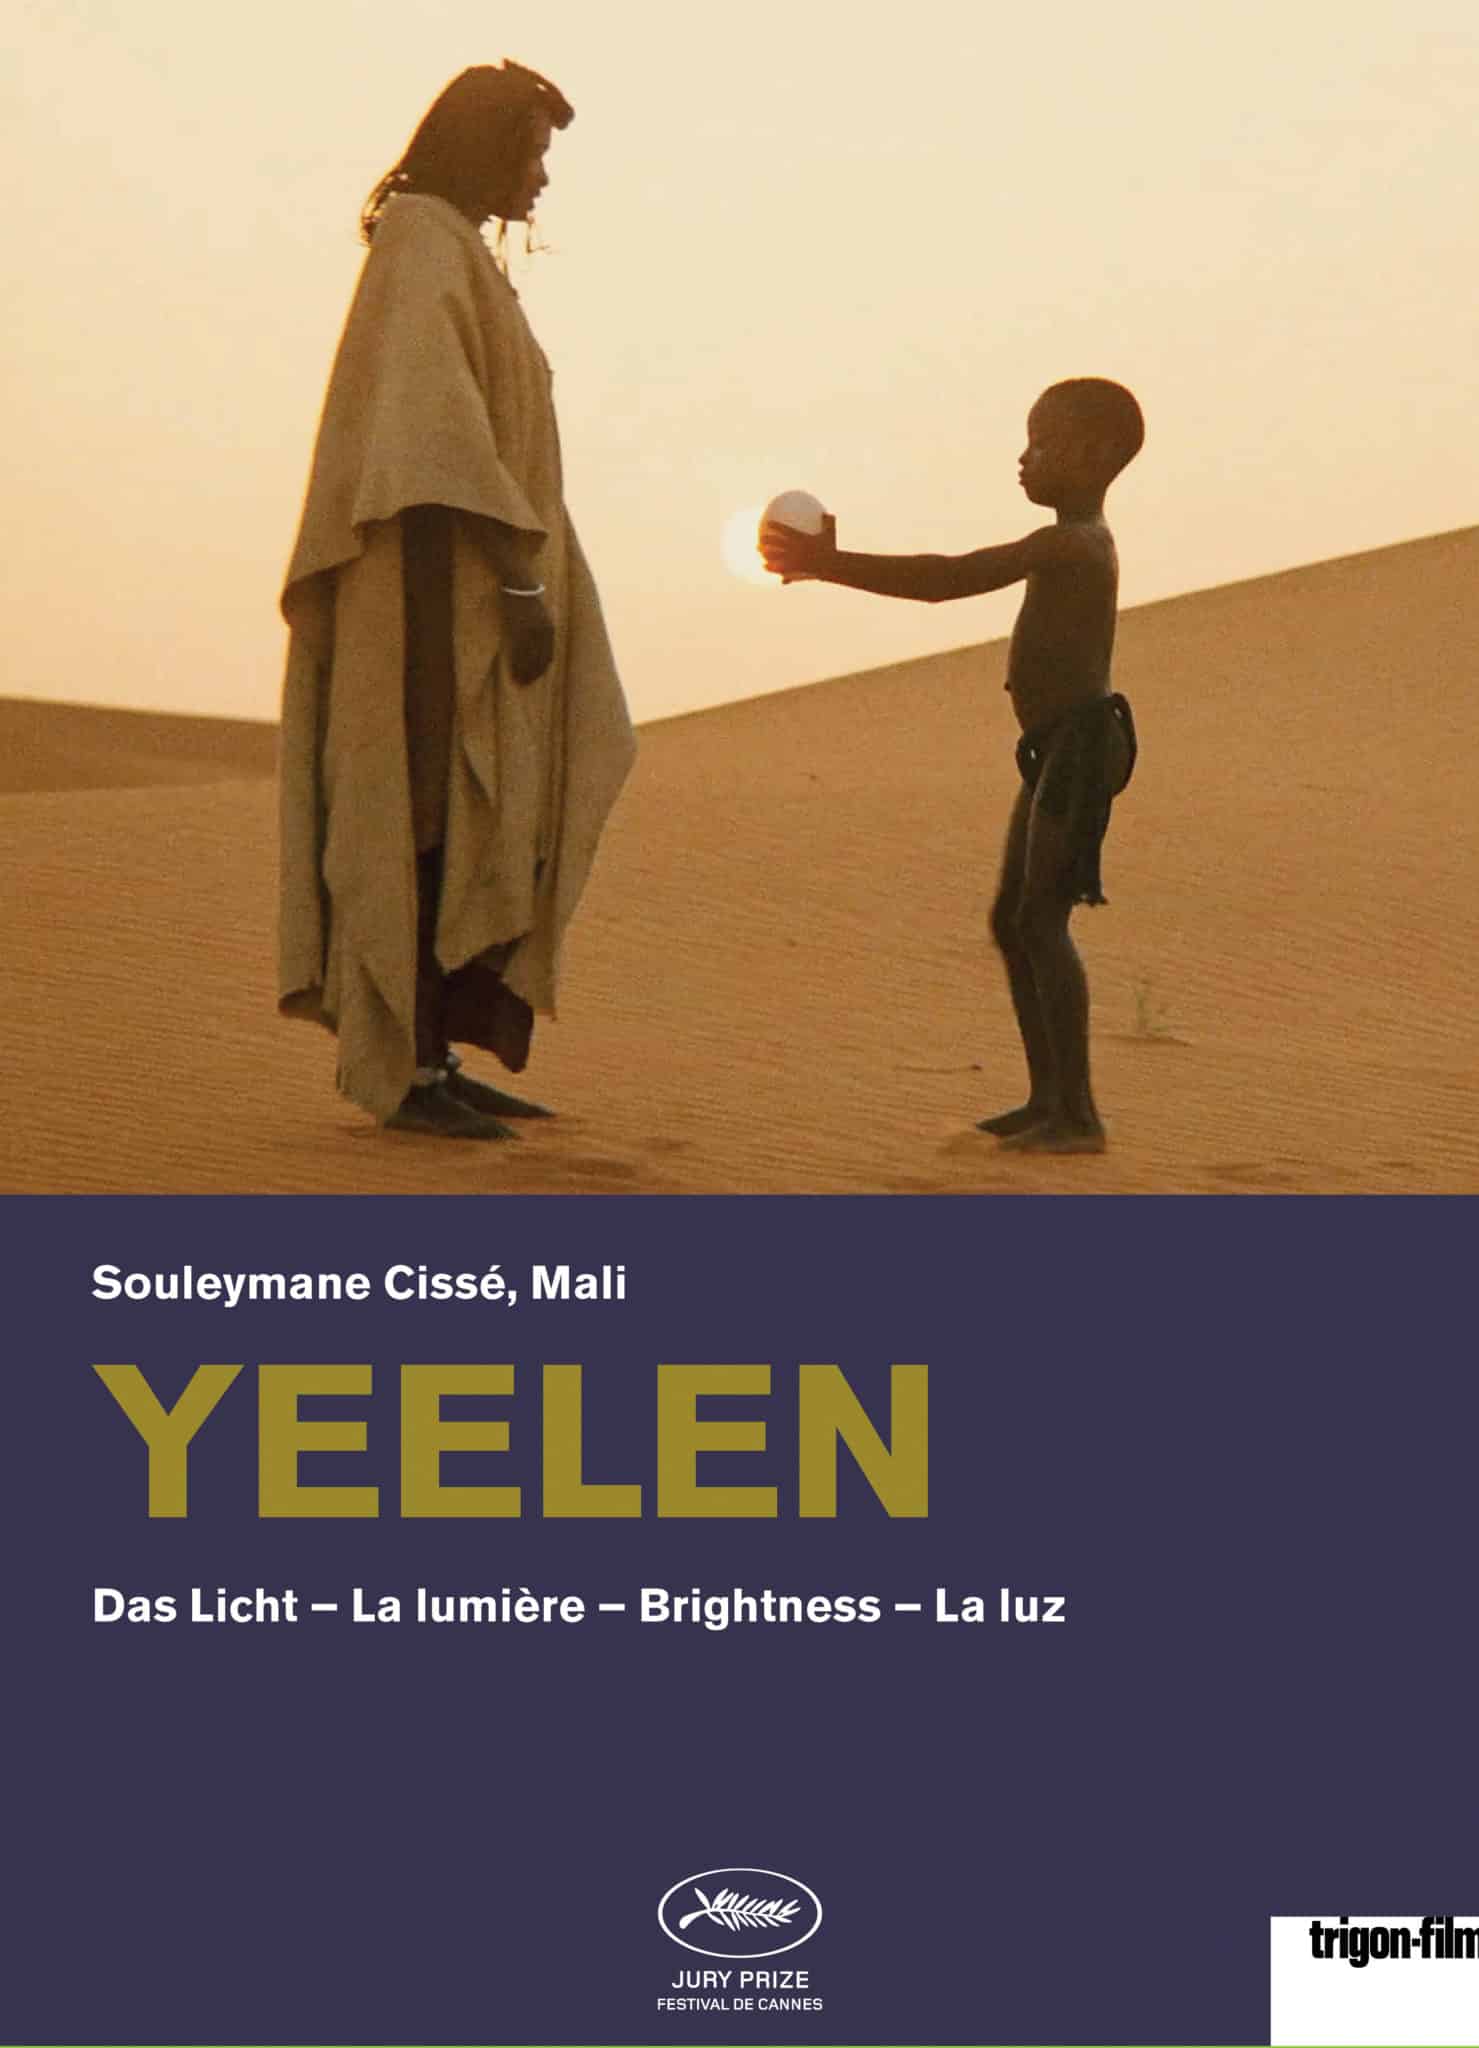 Bildbeschreibung: Filmplakat "Yeelen - Das Licht". In einer Wüste steht ein Kind vor einer erwachsenen Person und streckt ihr die Arme entgegen, während es etwas weißes in den Händen hält.